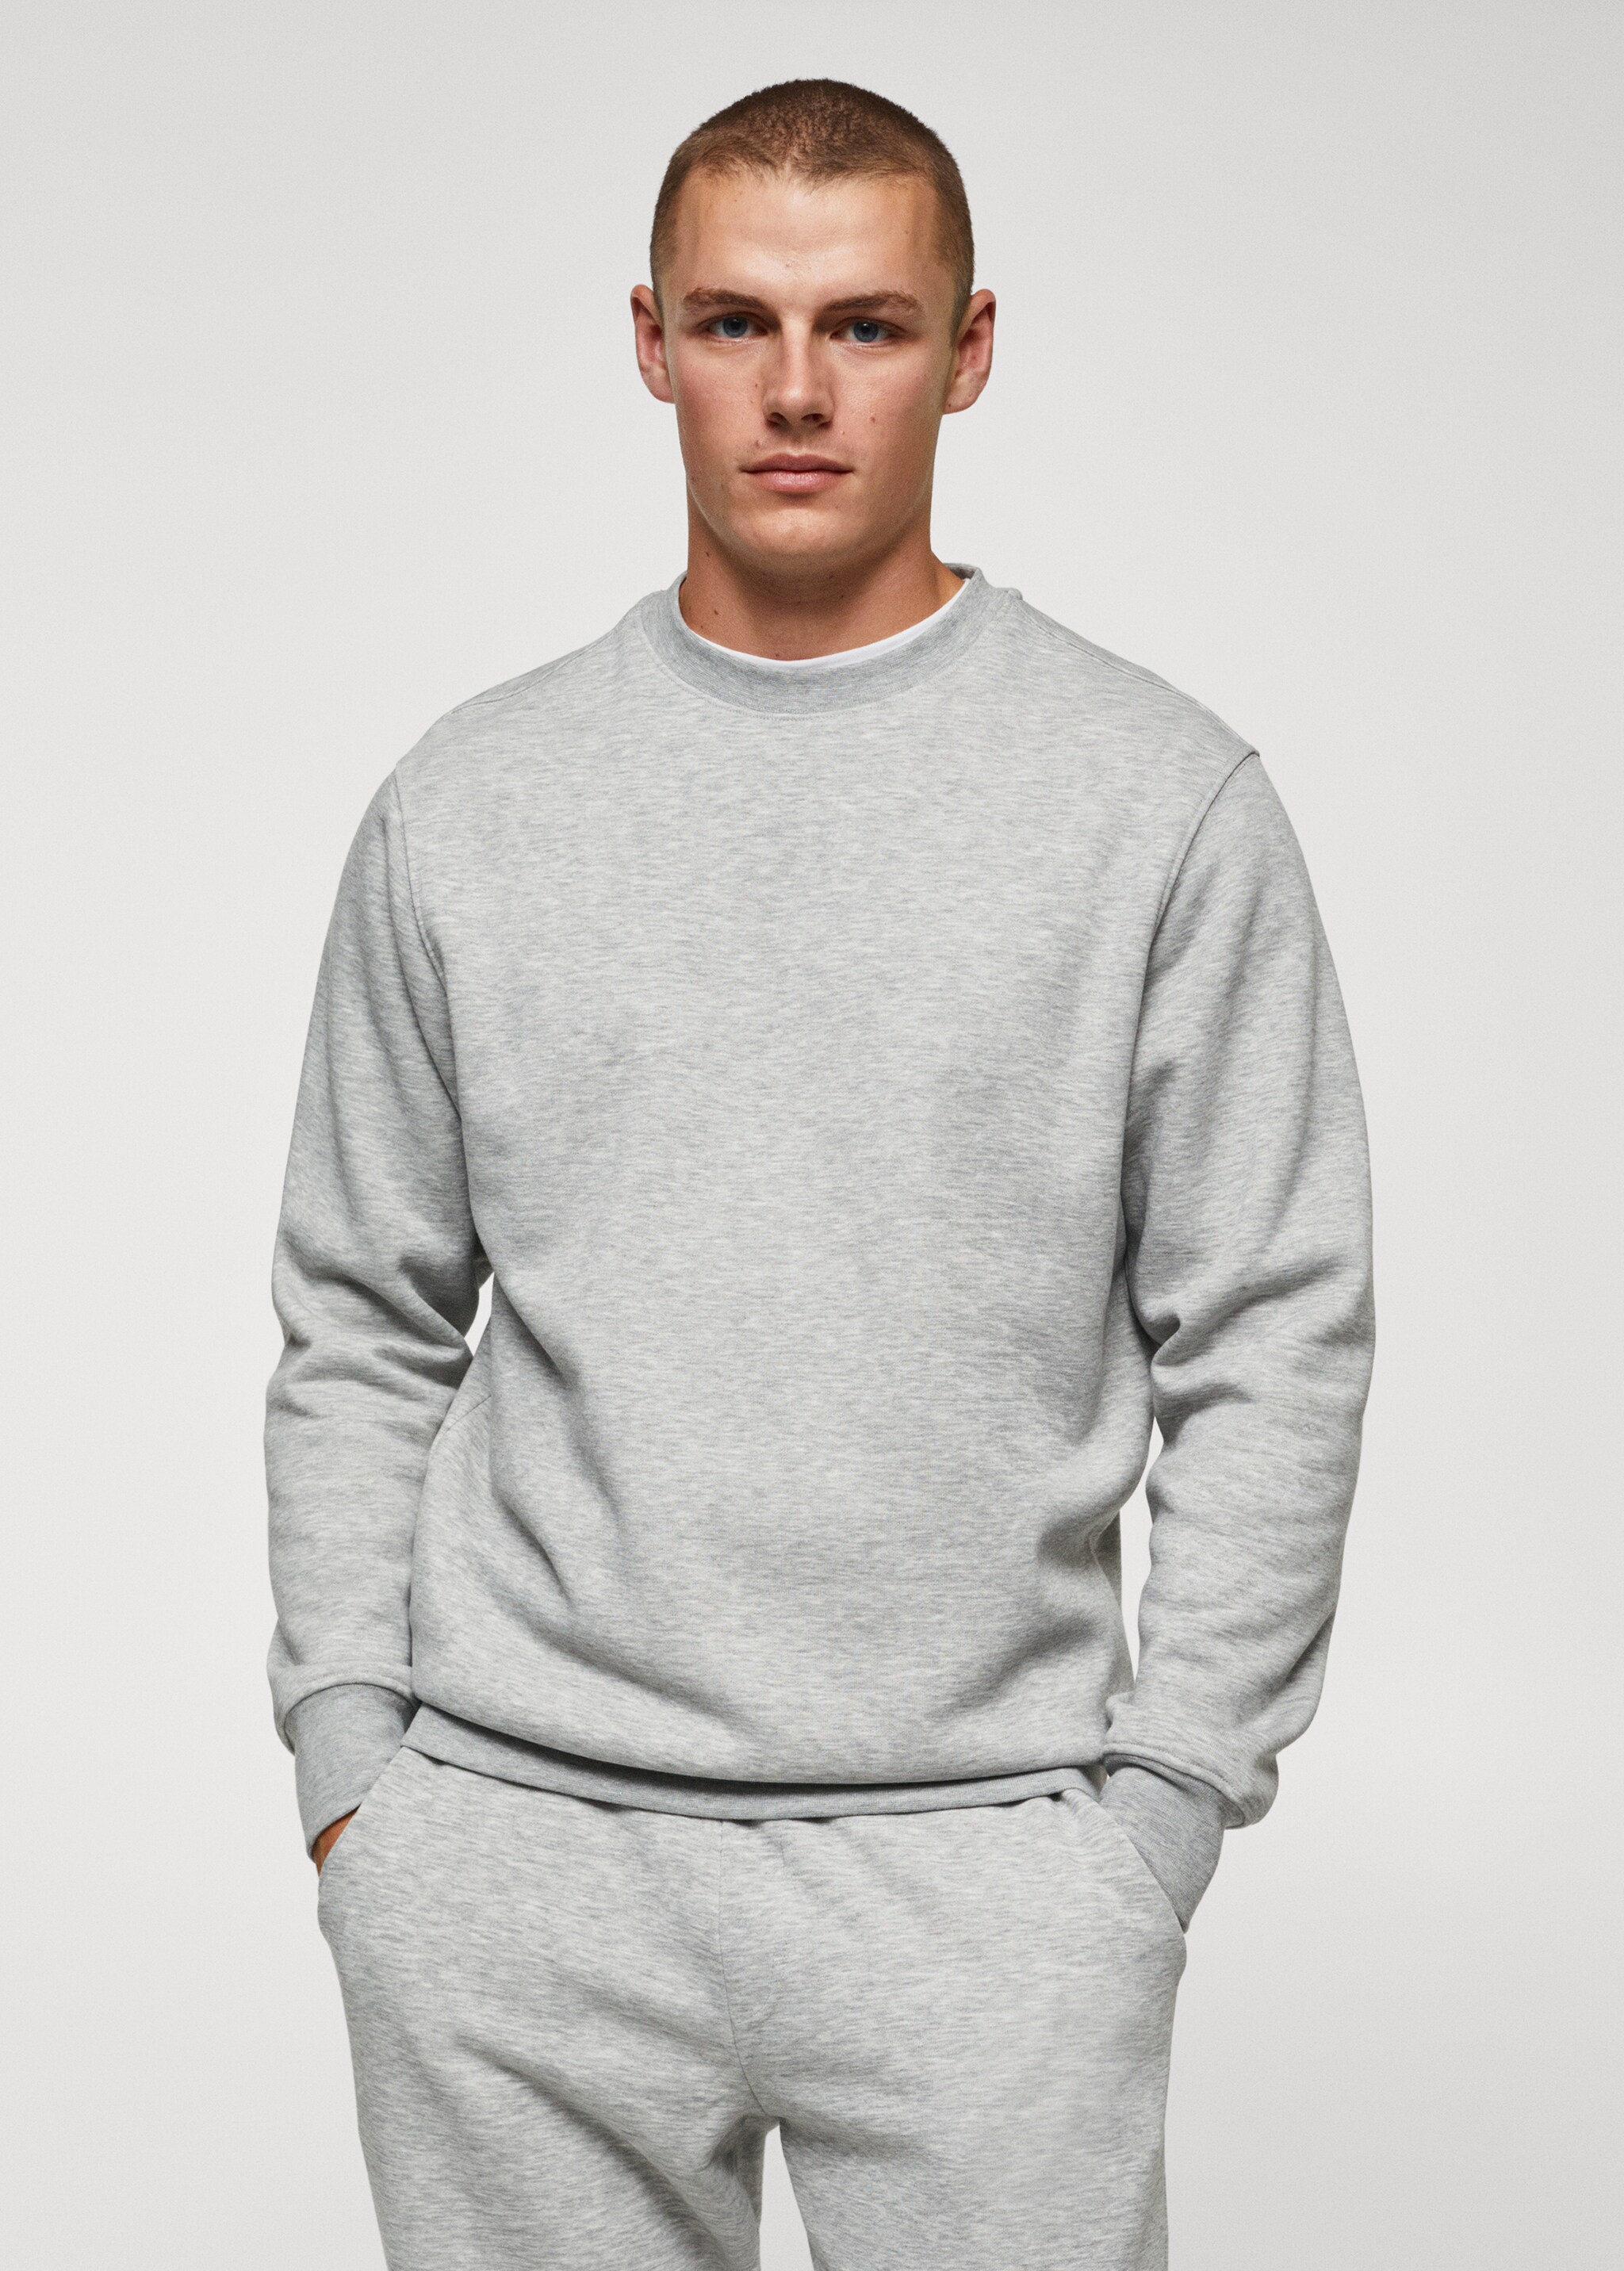 Lightweight cotton sweatshirt - Medium plane